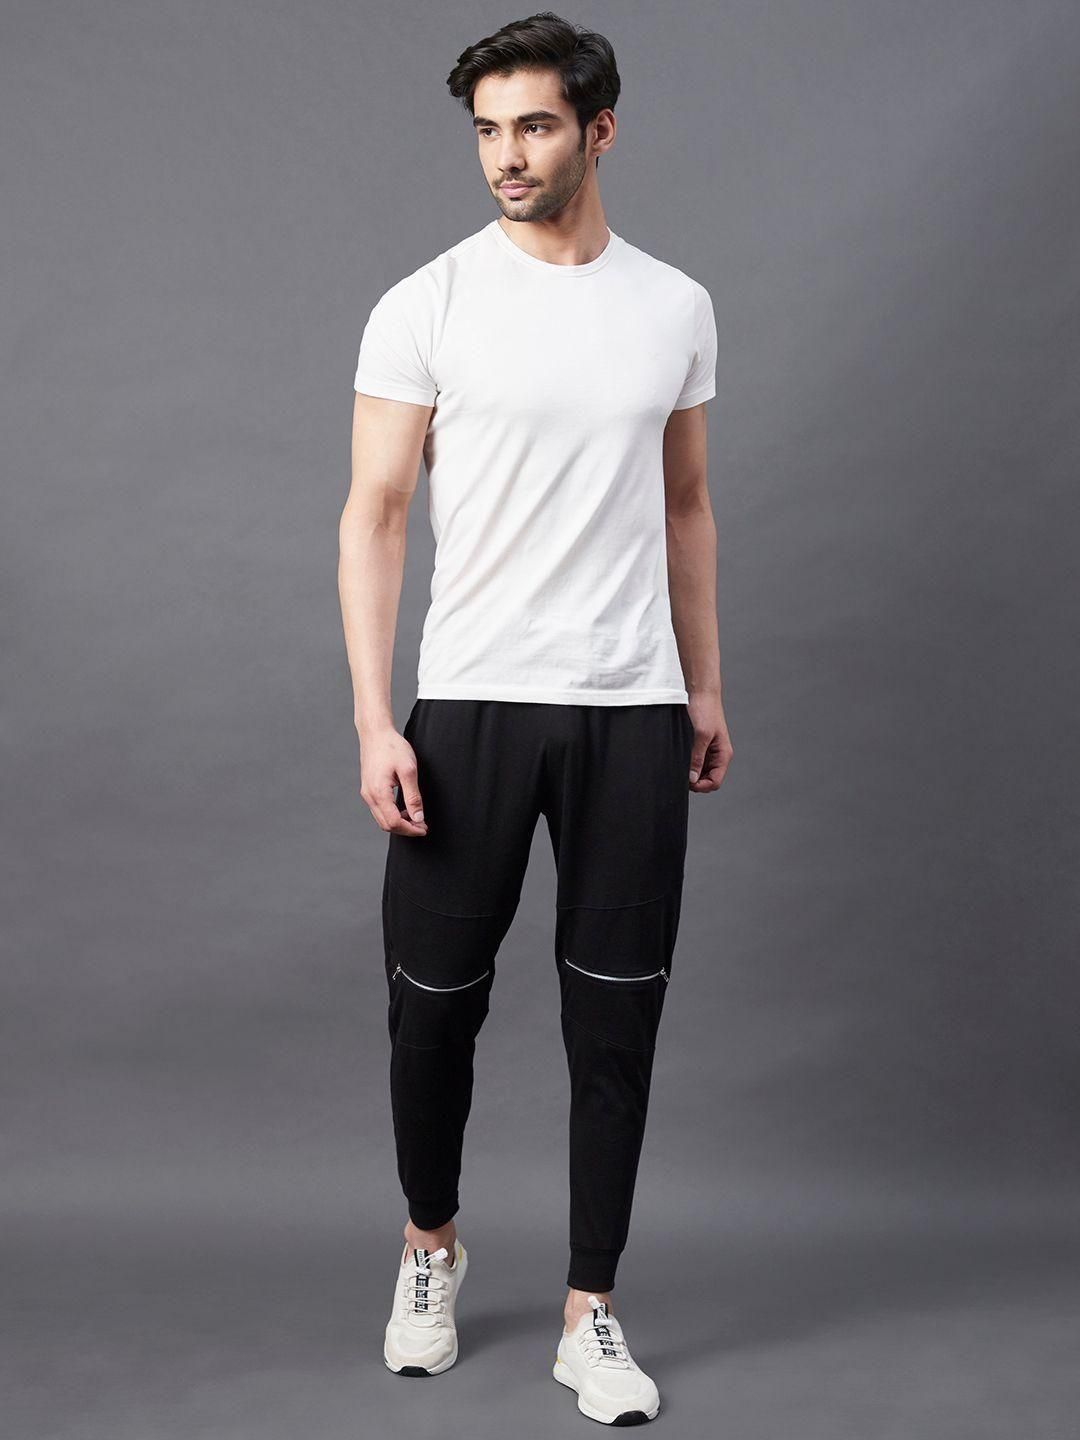 Rigo Cotton Solid Regular Fit Mens Sport Joggers